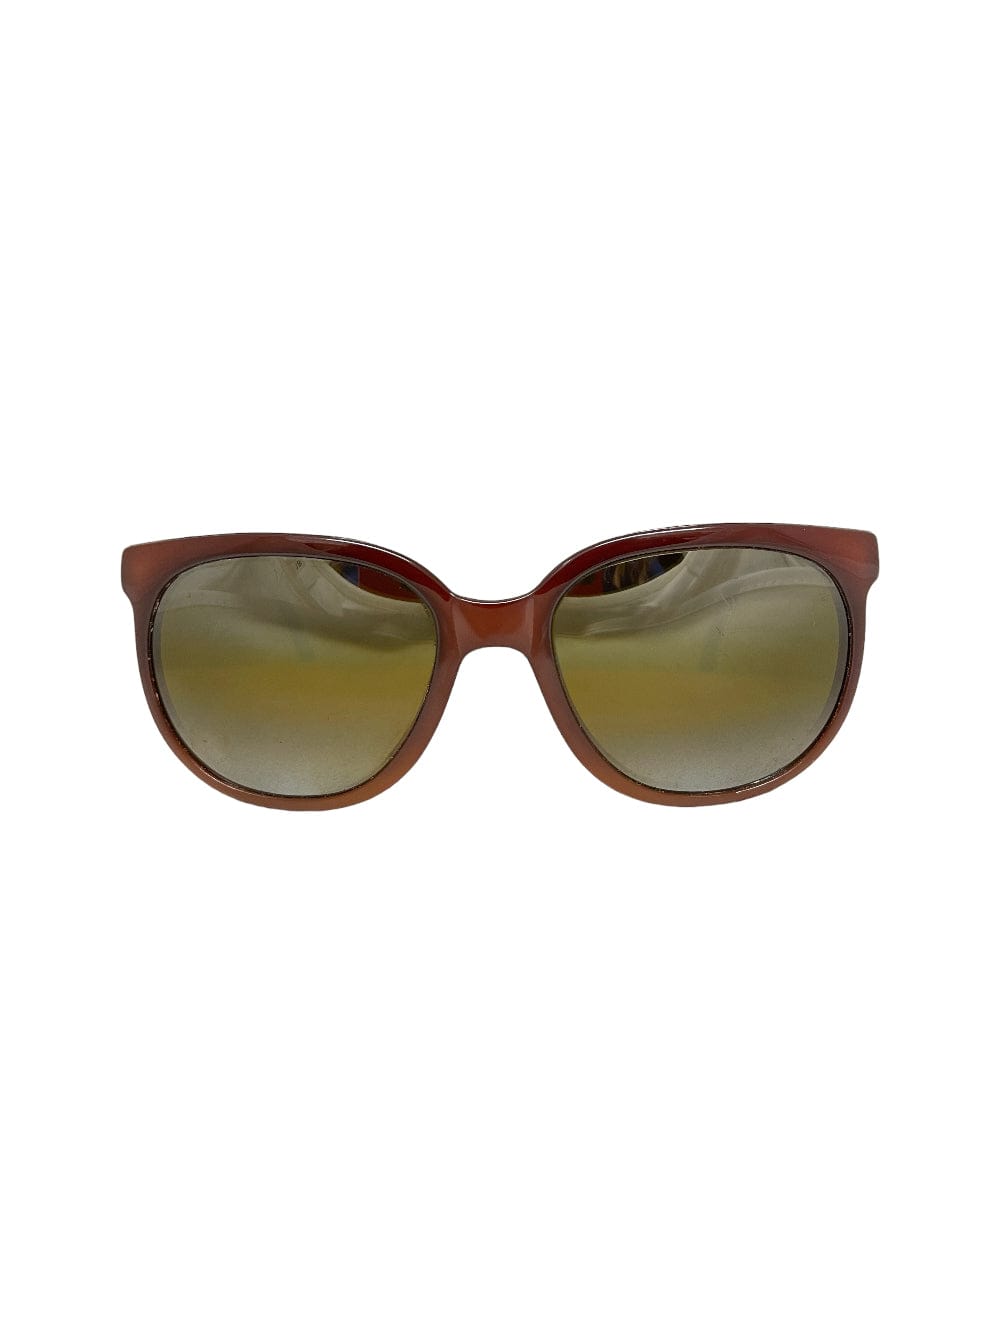 Shop Vuarnet Pouilloux 002 - Brown Sunglasses